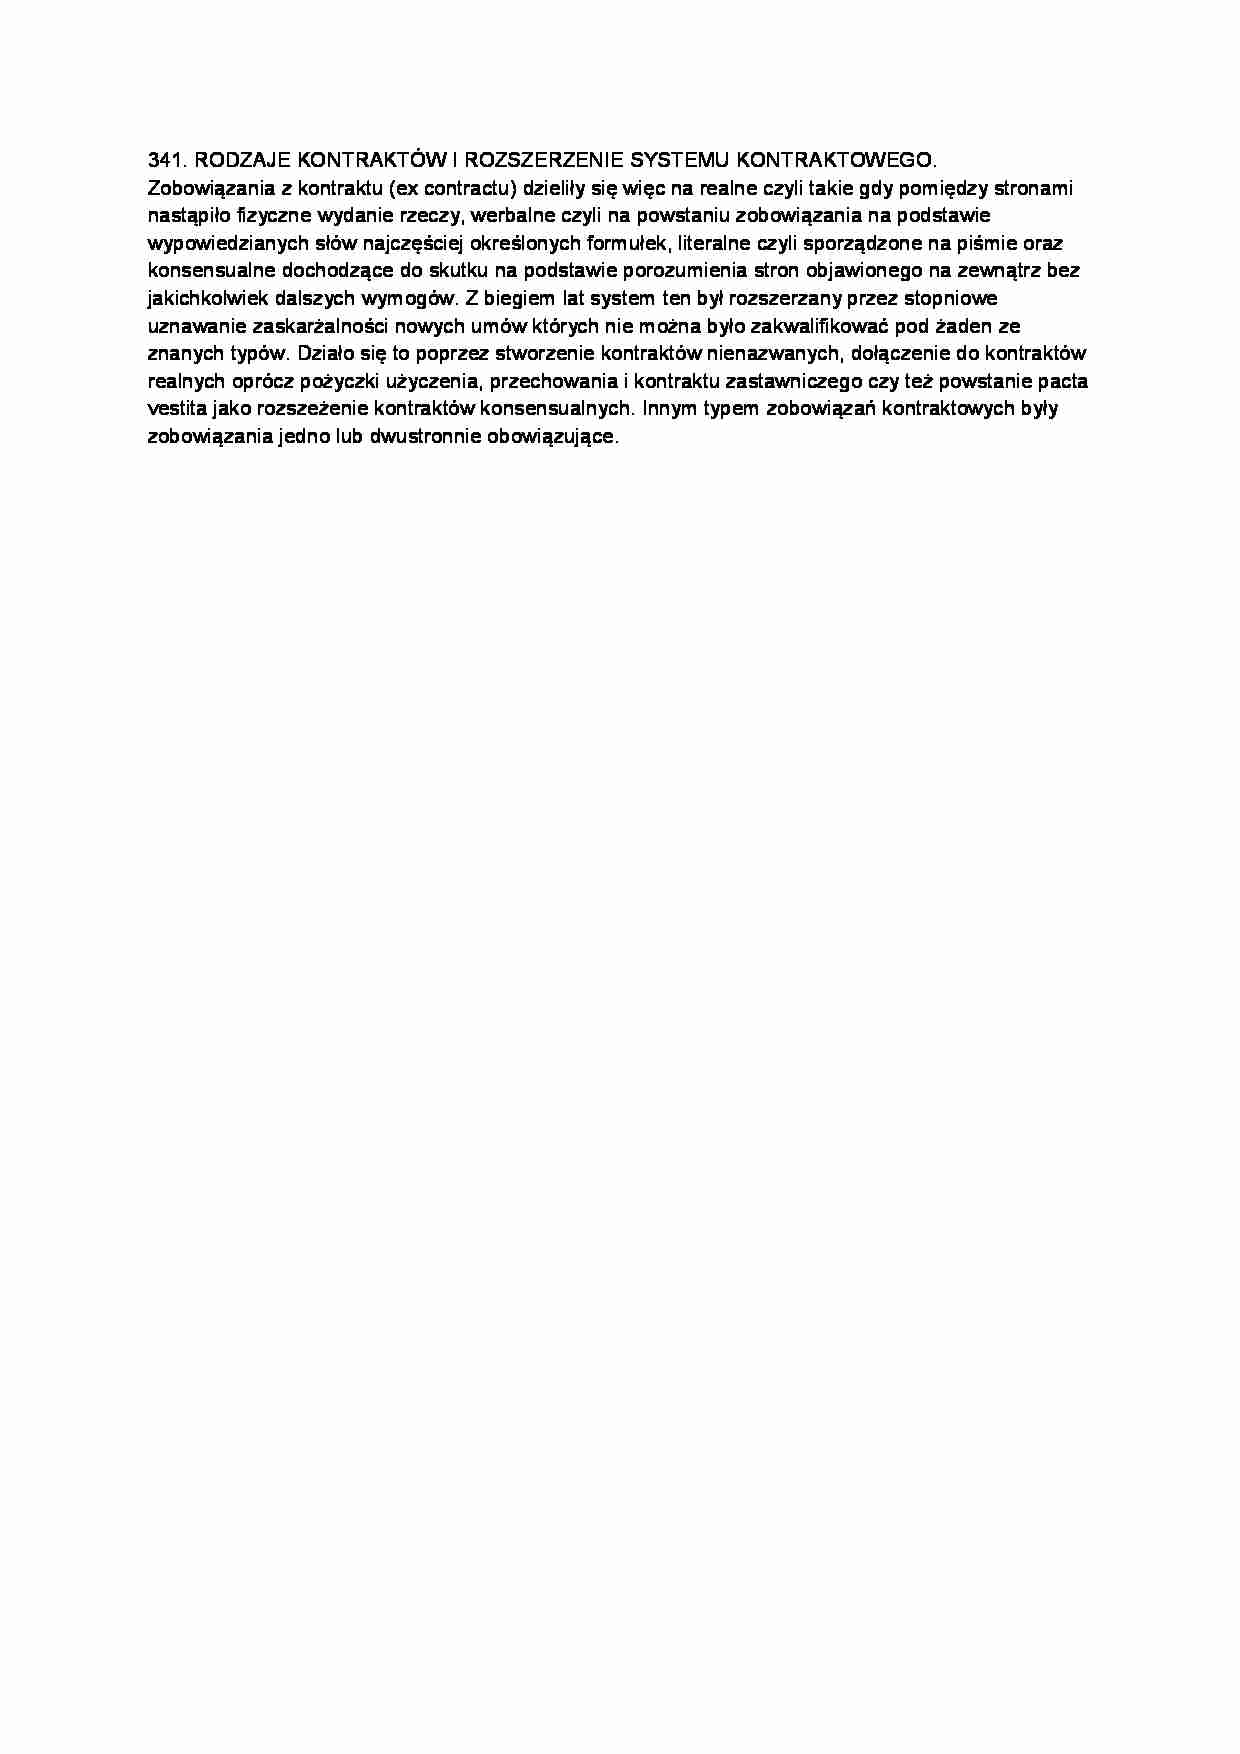 Rodzaje kontraktów i rozszerzenie sytemu kontraktowego-opracowanie - strona 1